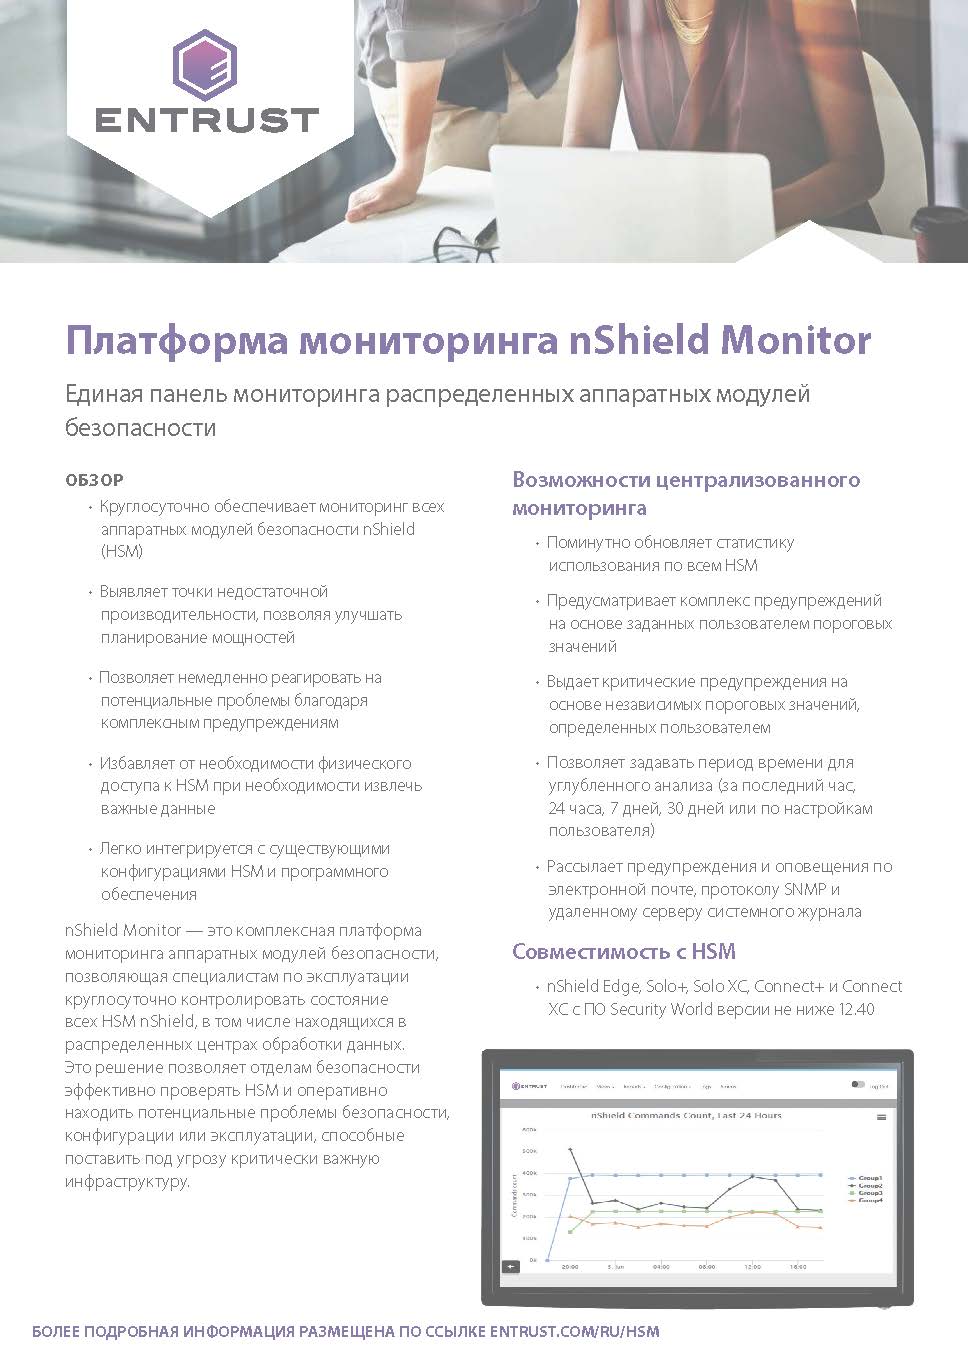 Платформа мониторинга nShield Monitor